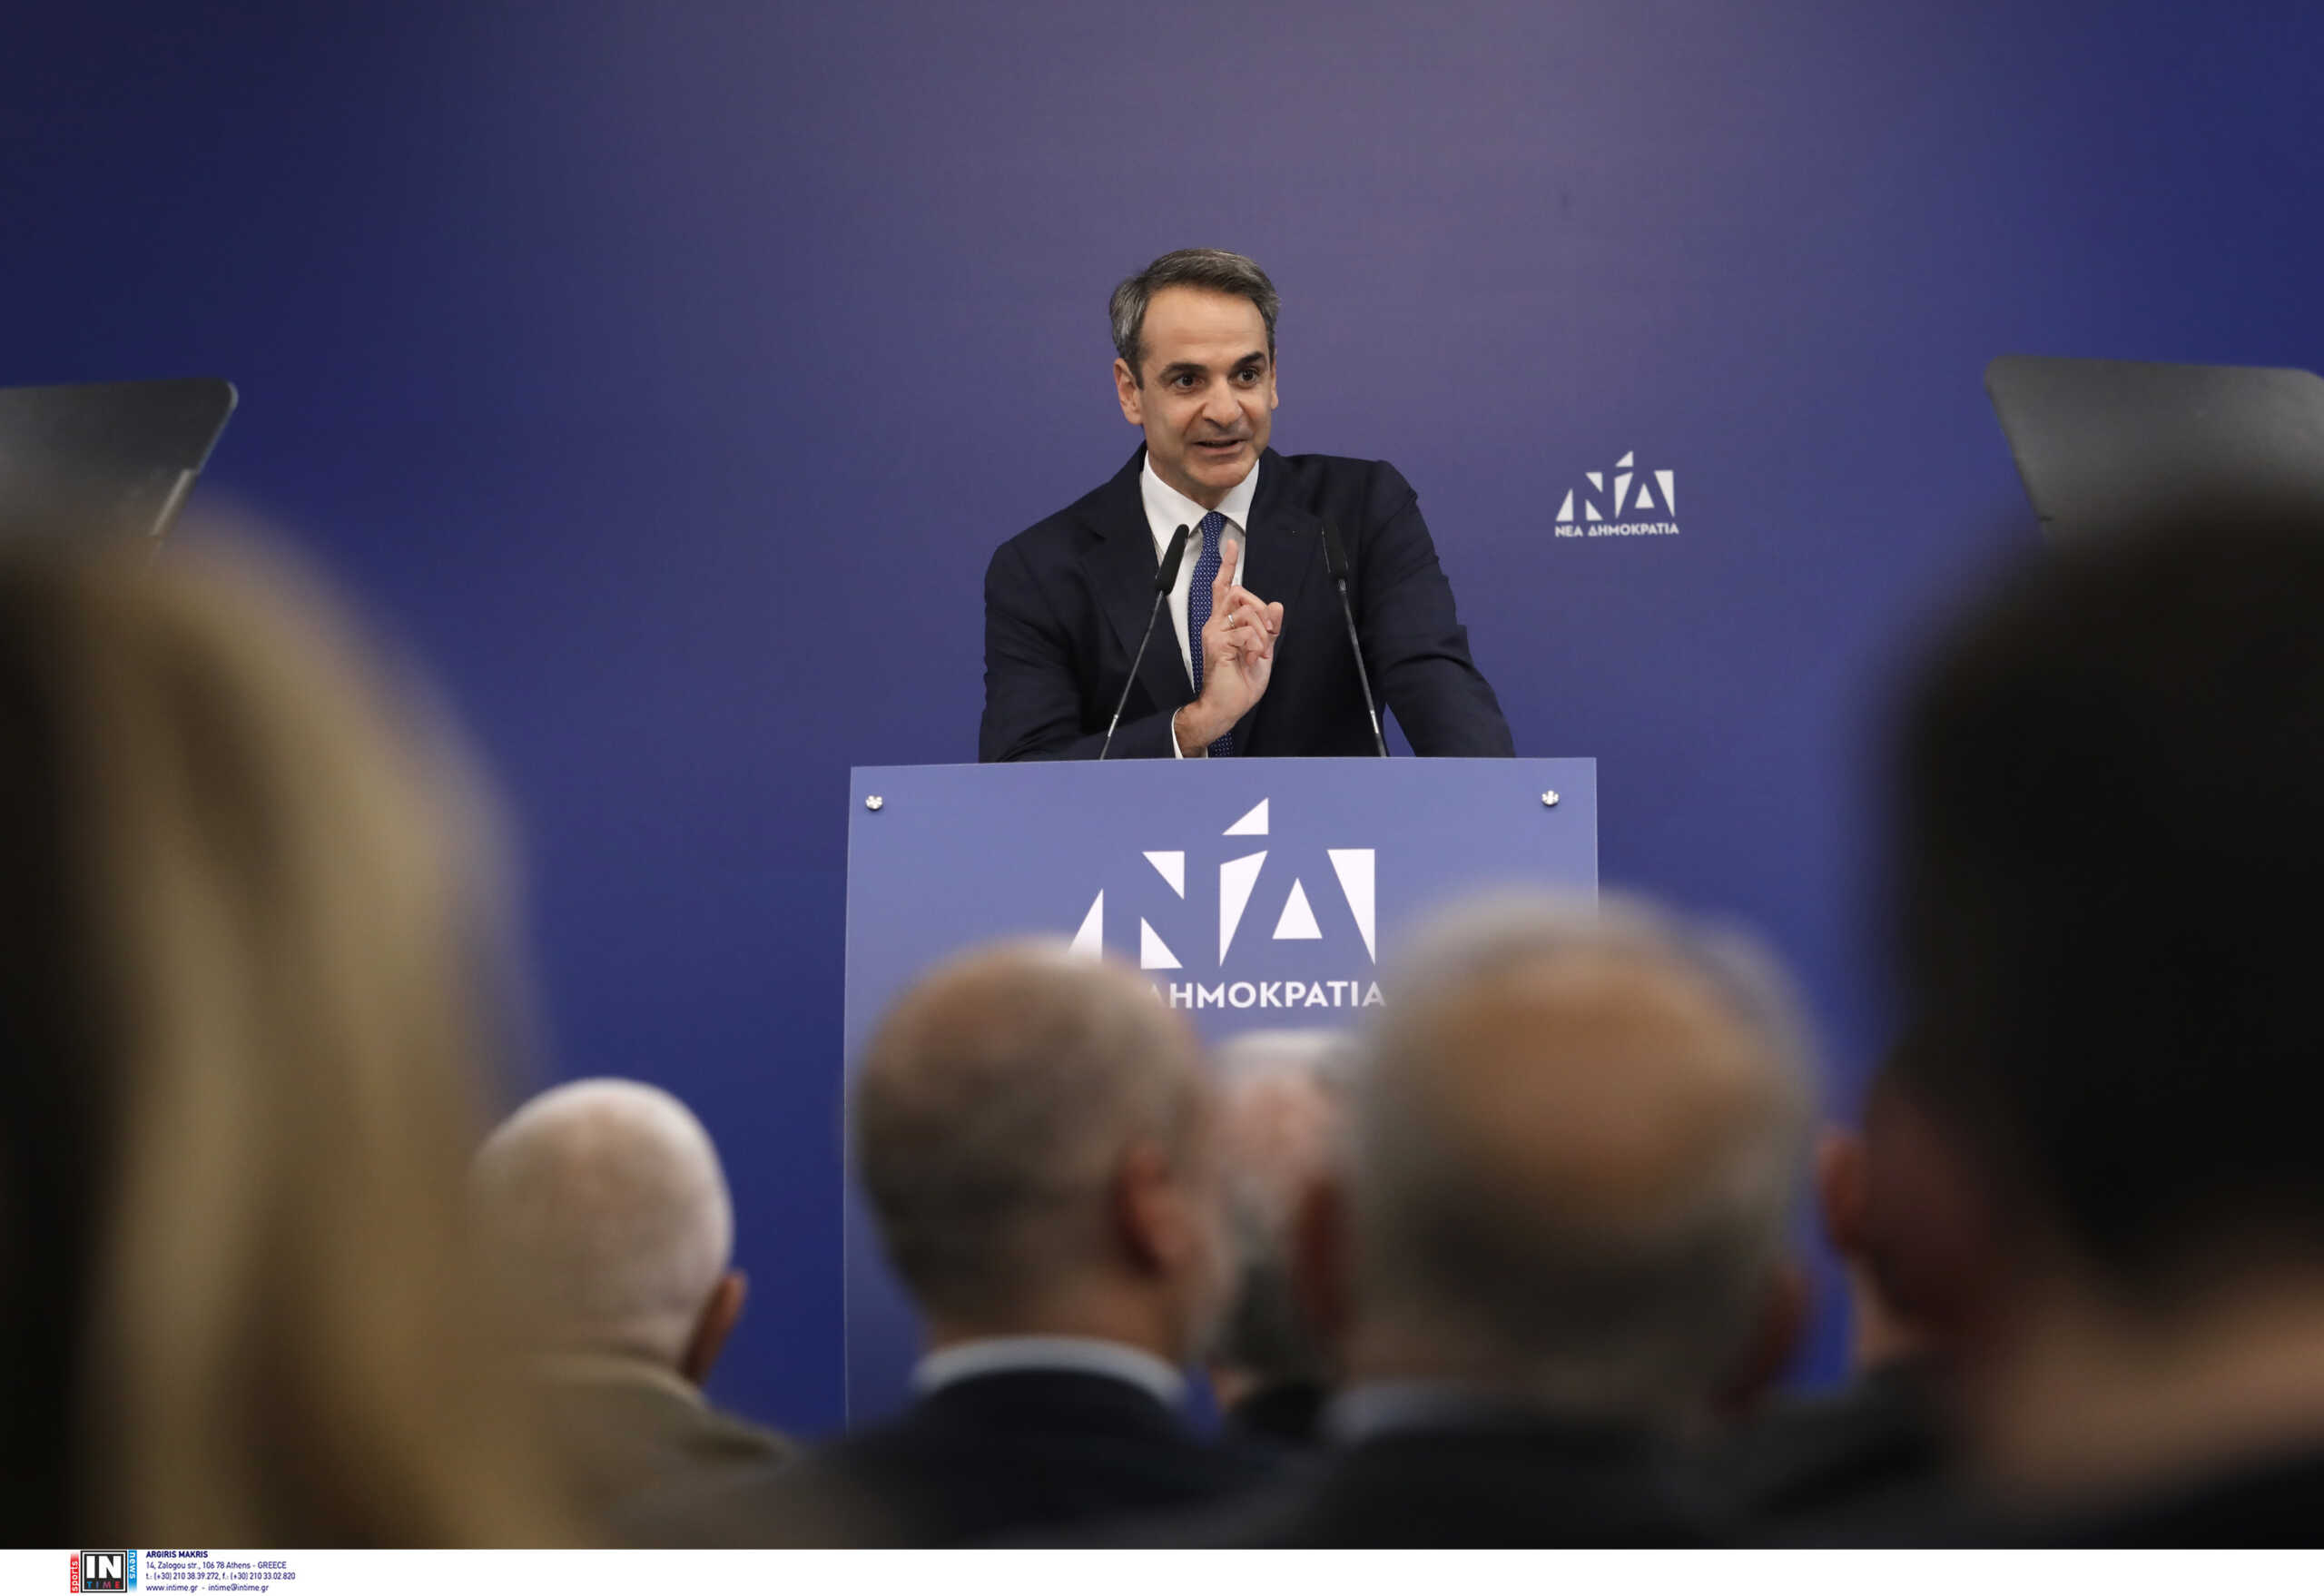 Μητσοτάκης: «Εξωθεσμικά κέντρα θέλουν έναν πιεζόμενο πρωθυπουργό, δε μασάμε» – Το δίλημμα της κάλπης και επίθεση στον ΣΥΡΙΖΑ